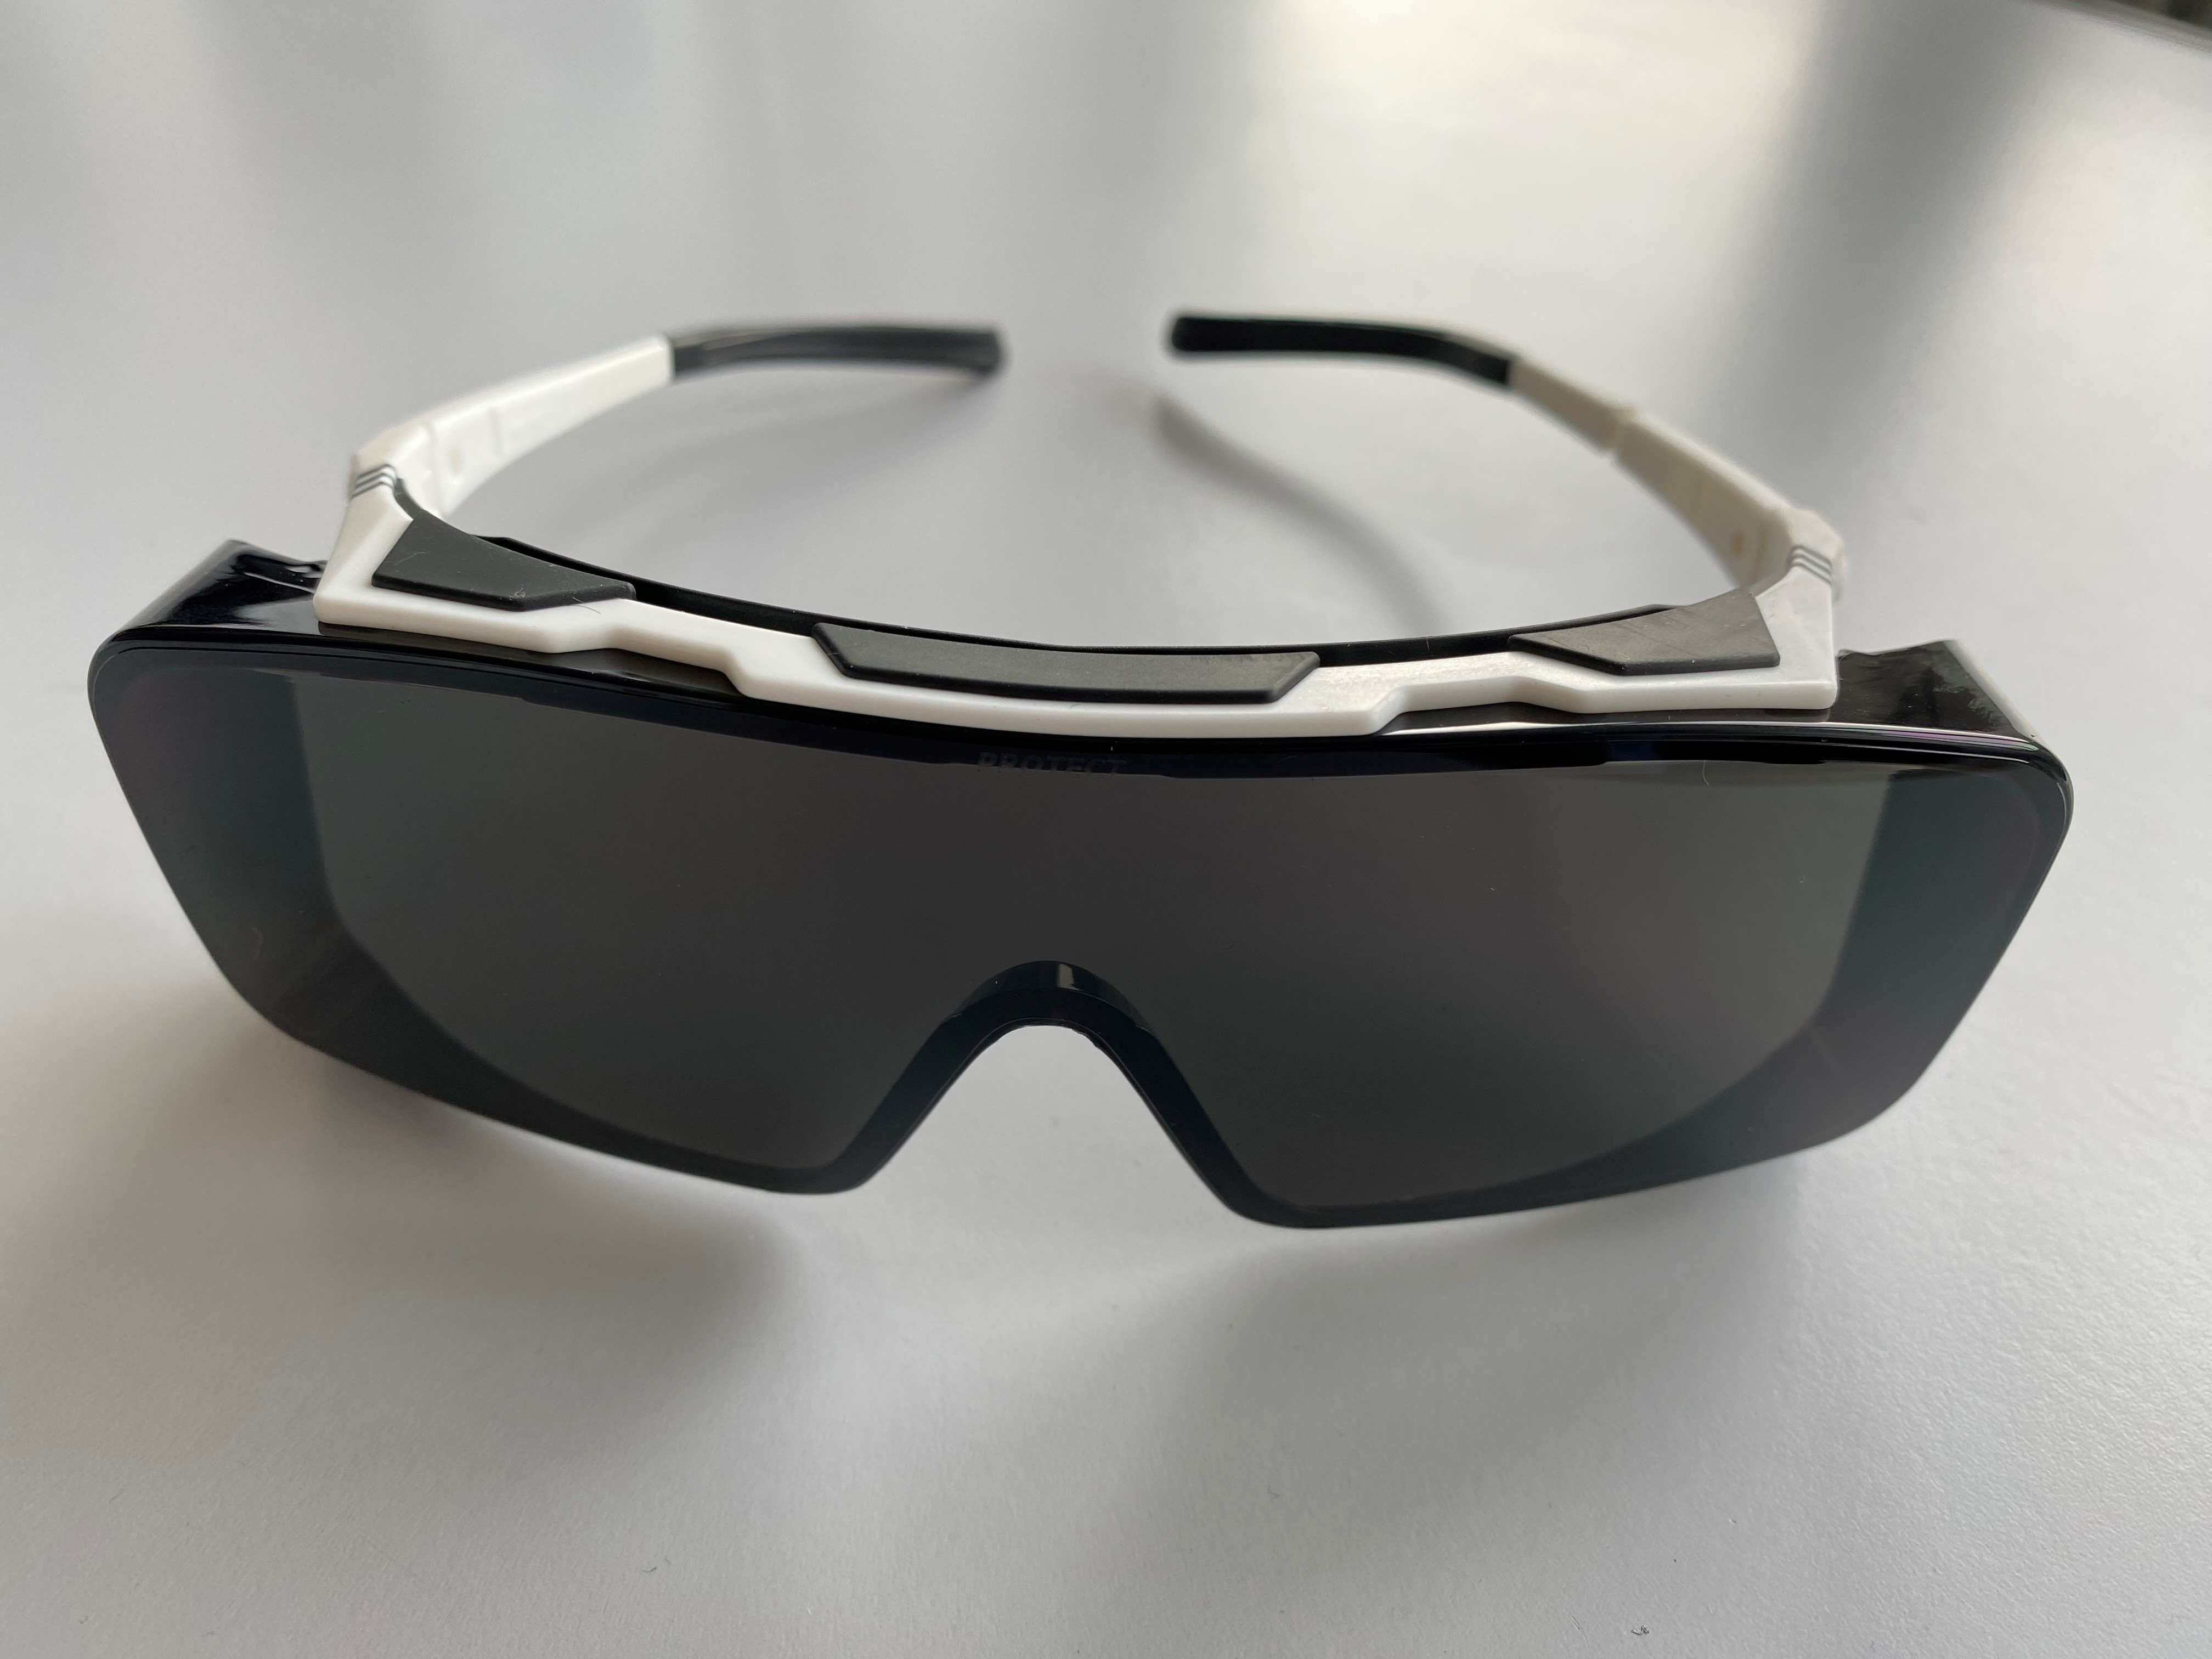 Blendschutz-Brille für PACT 400